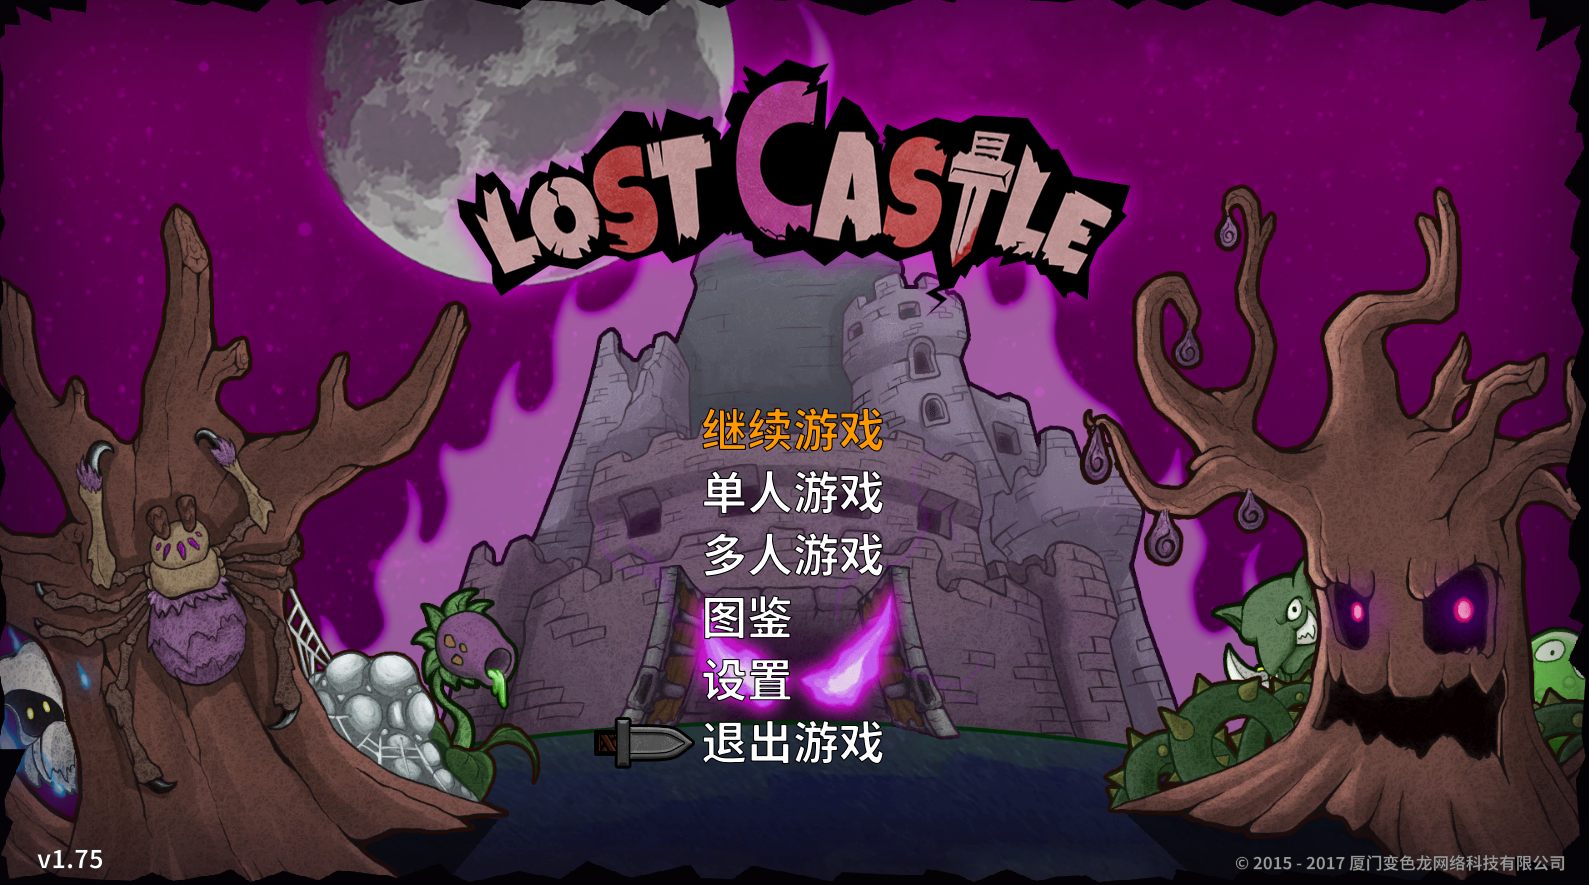 宝藏猎人如何出装？急，在线等！——【lost castle】（失落城堡）评测